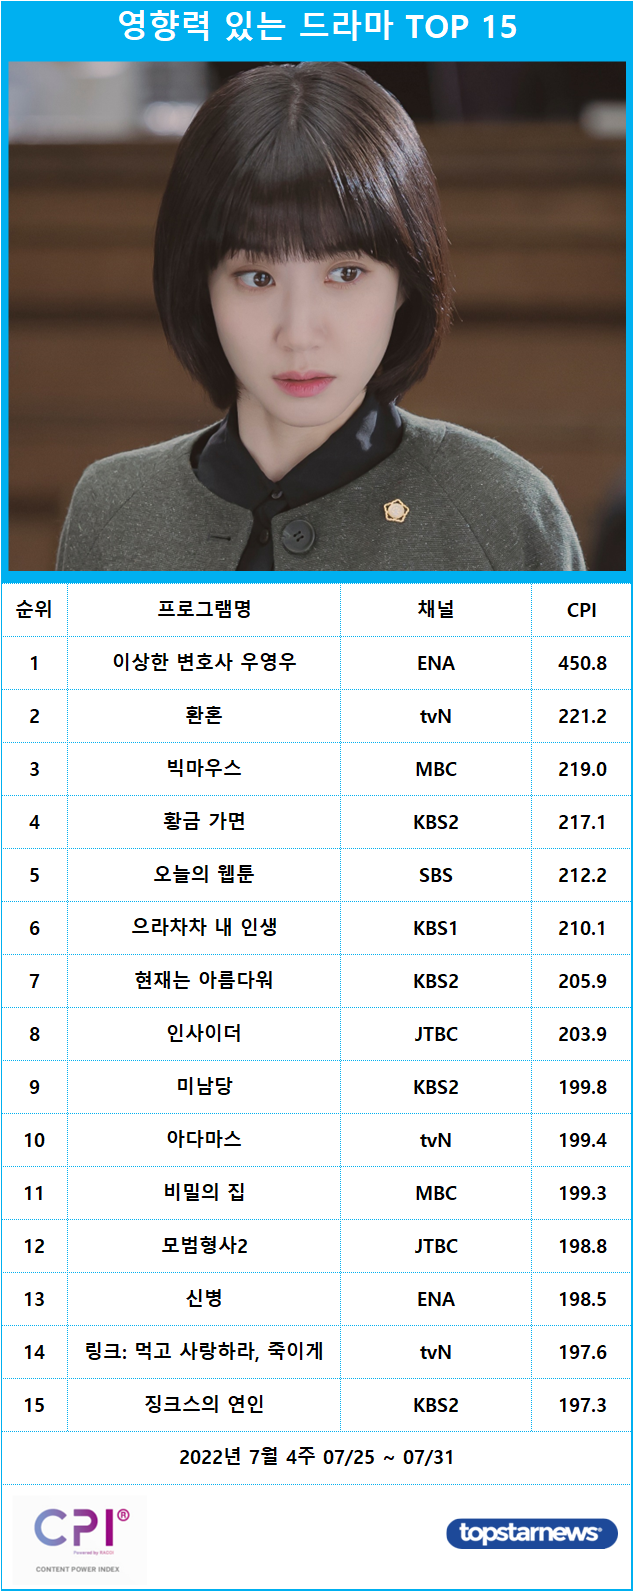 [표] 영향력 있는 프로그램 드라마 TOP 15